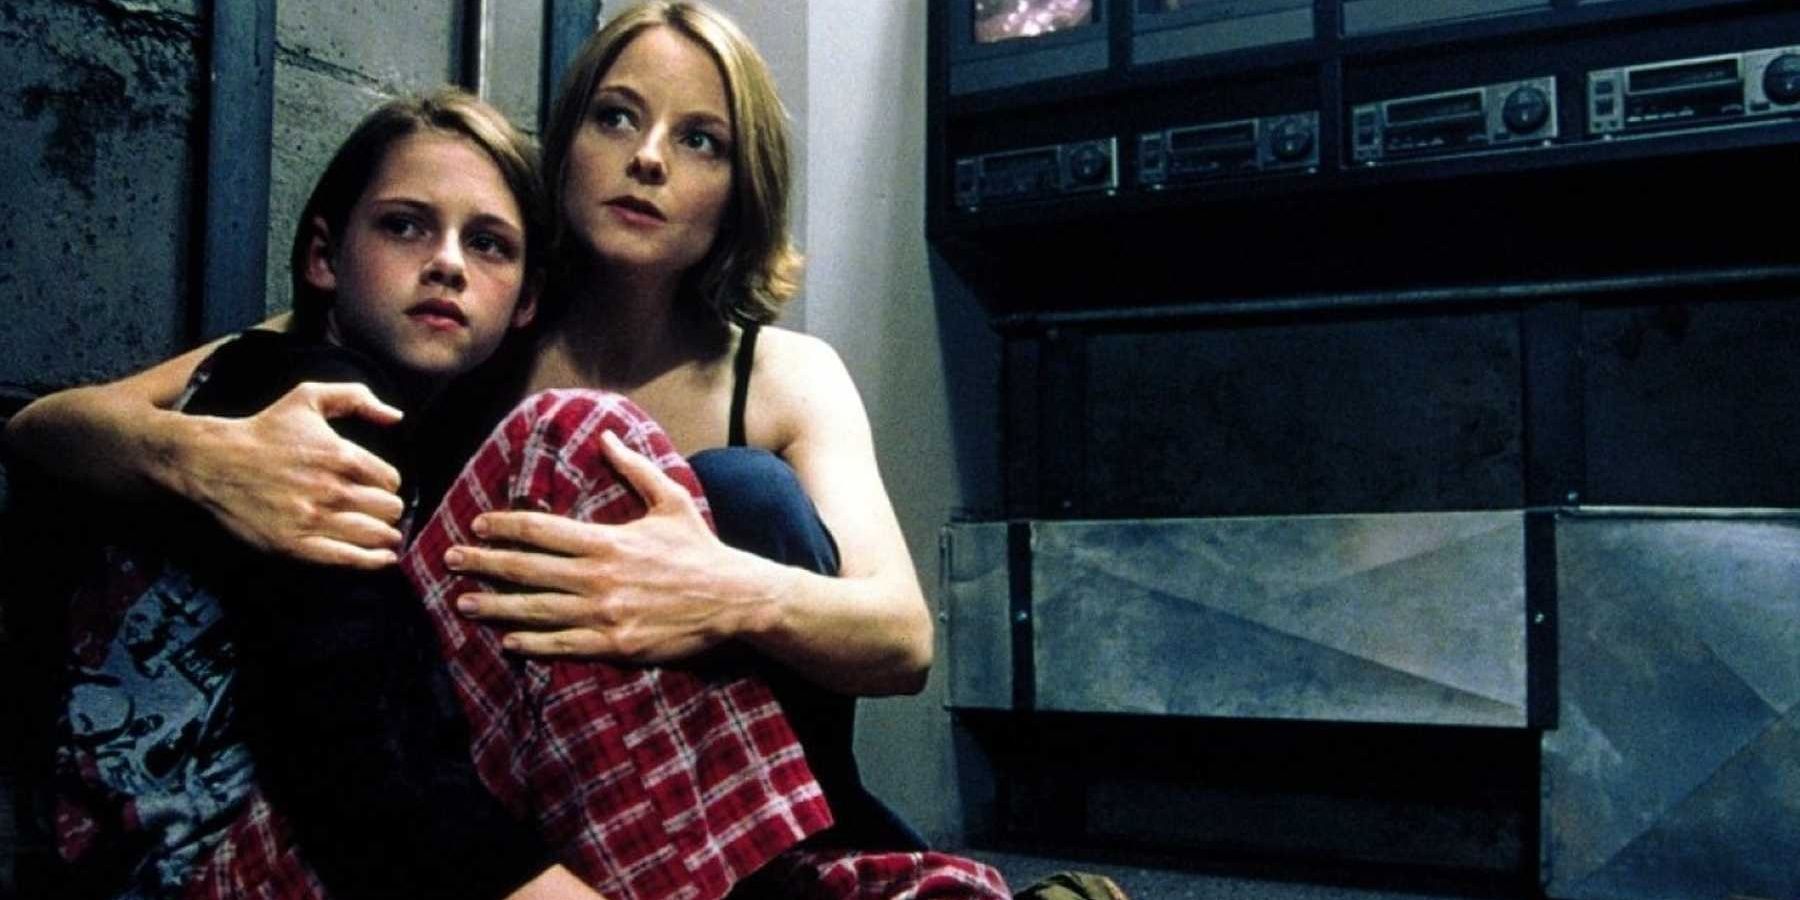 Jodie Foster and Kristen Stewart in Panic Room